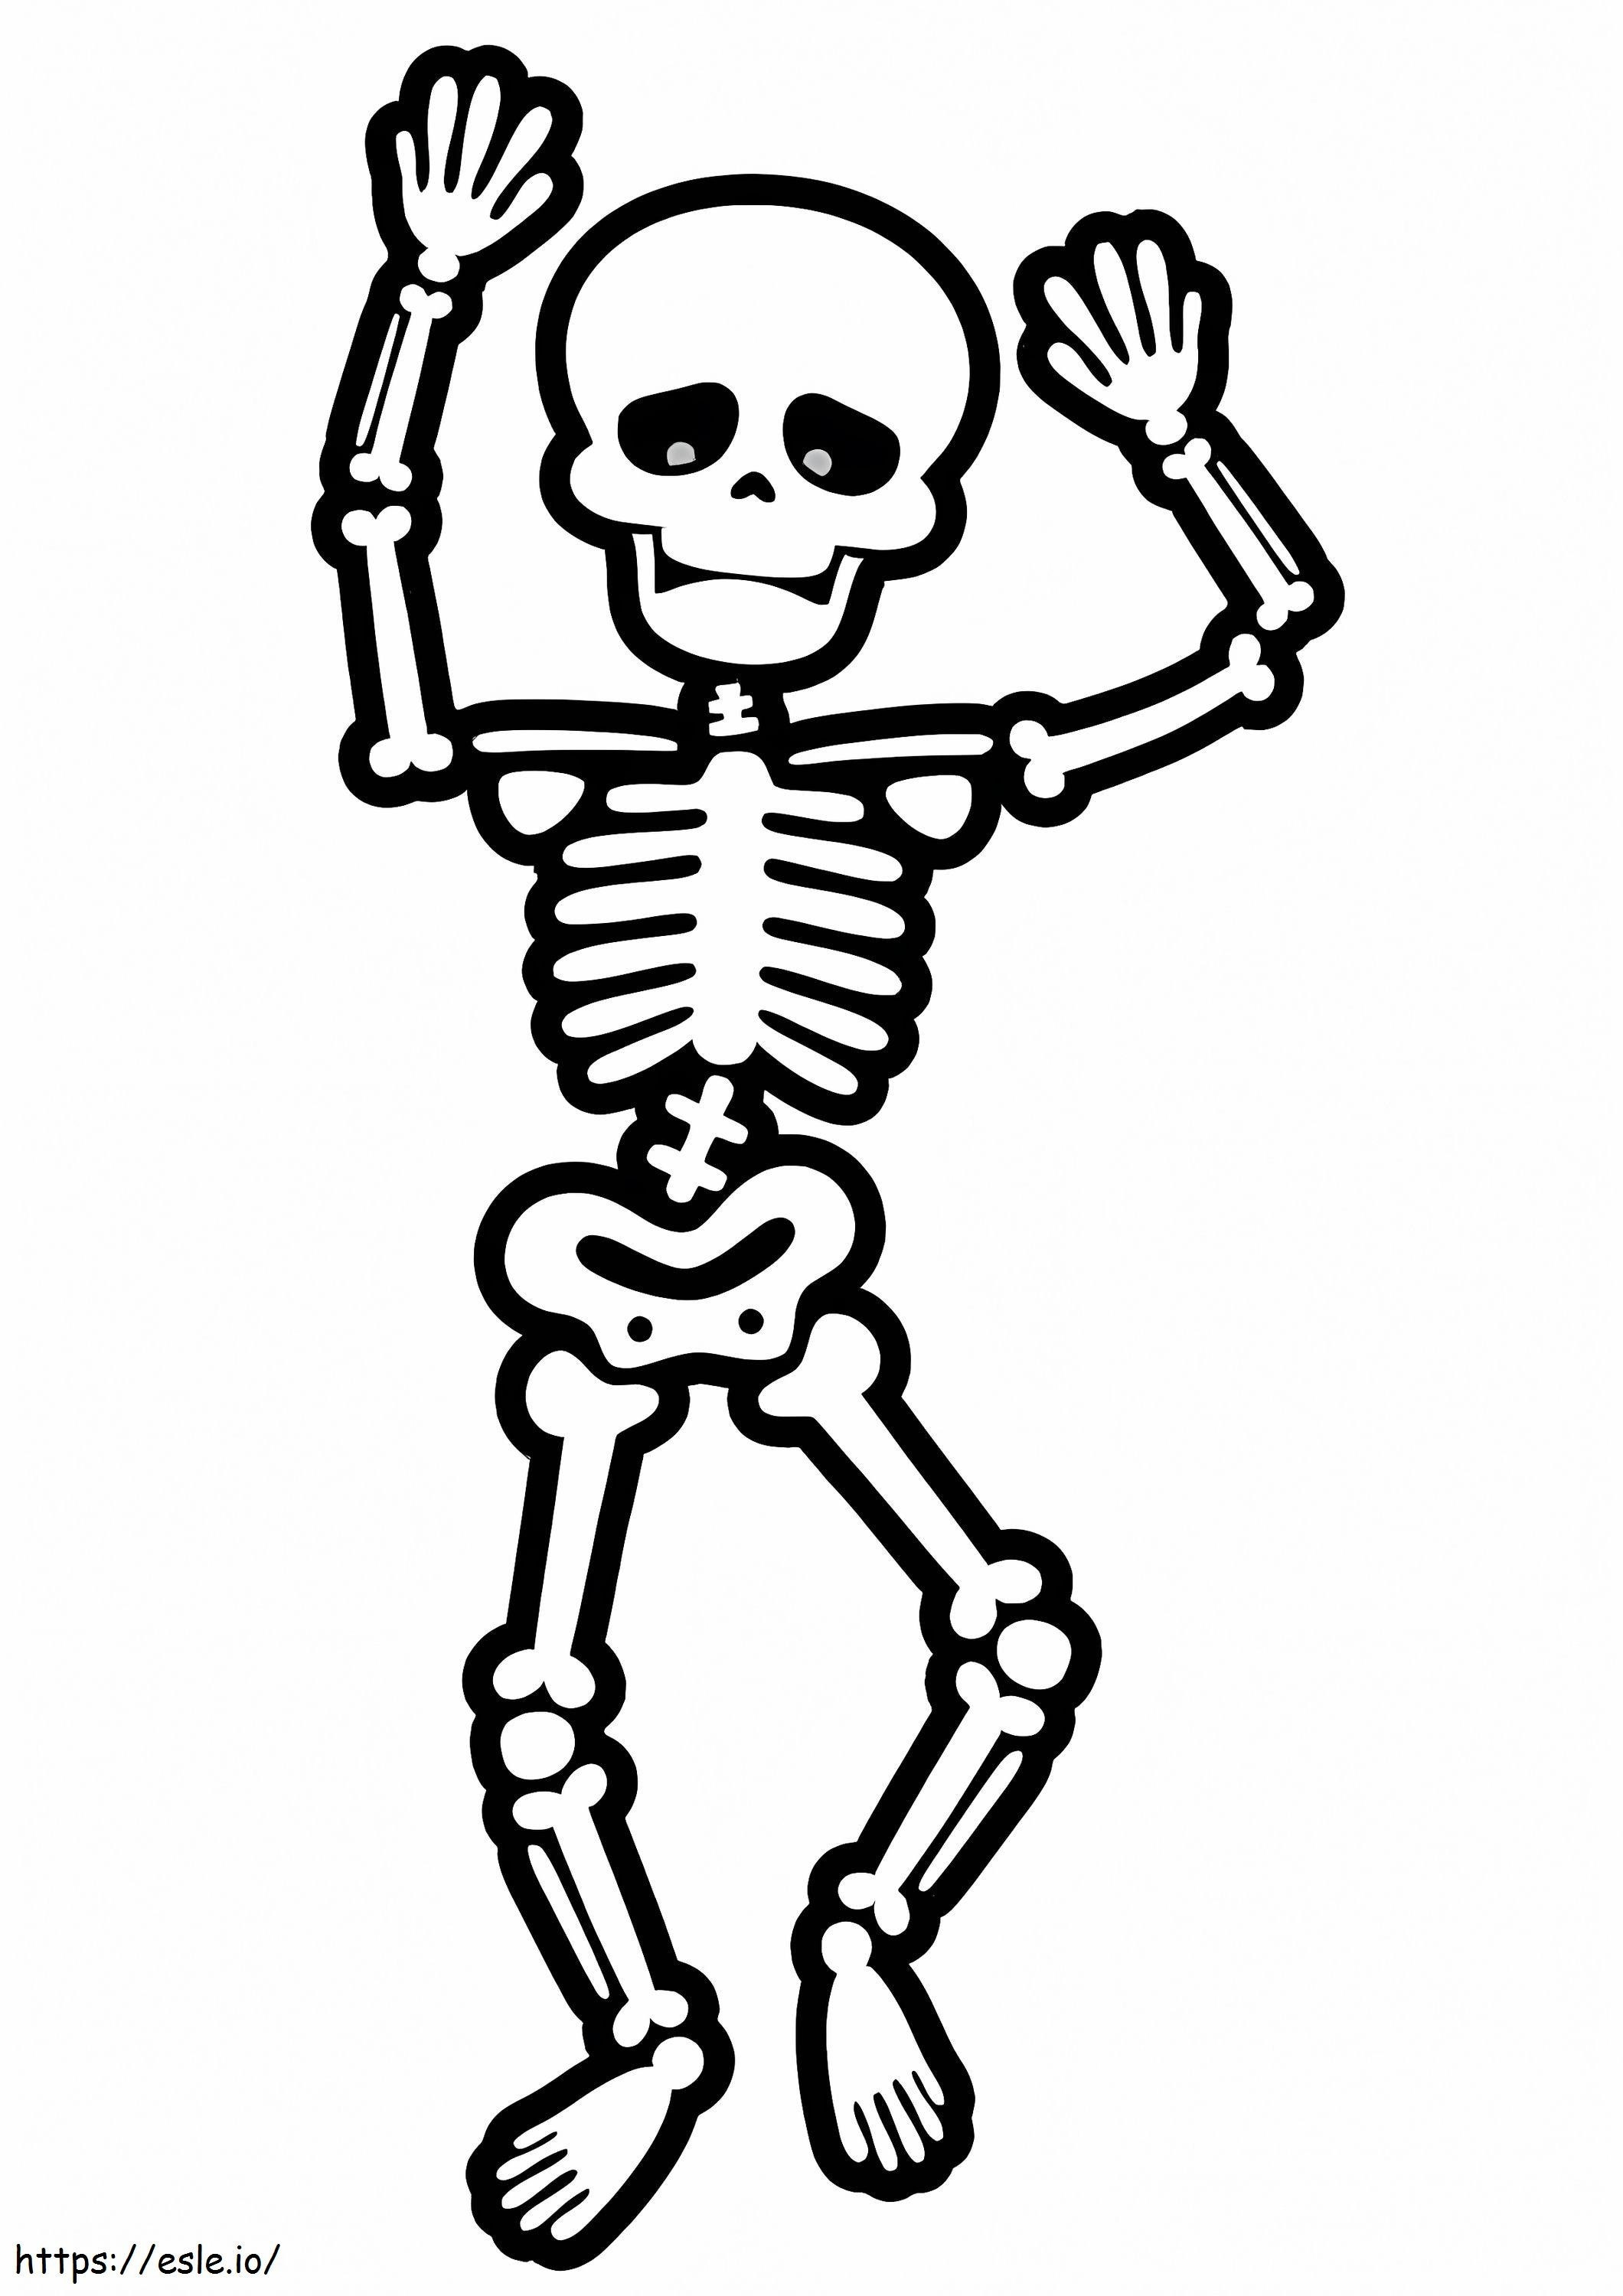 Podstawowy szkielet kolorowanka